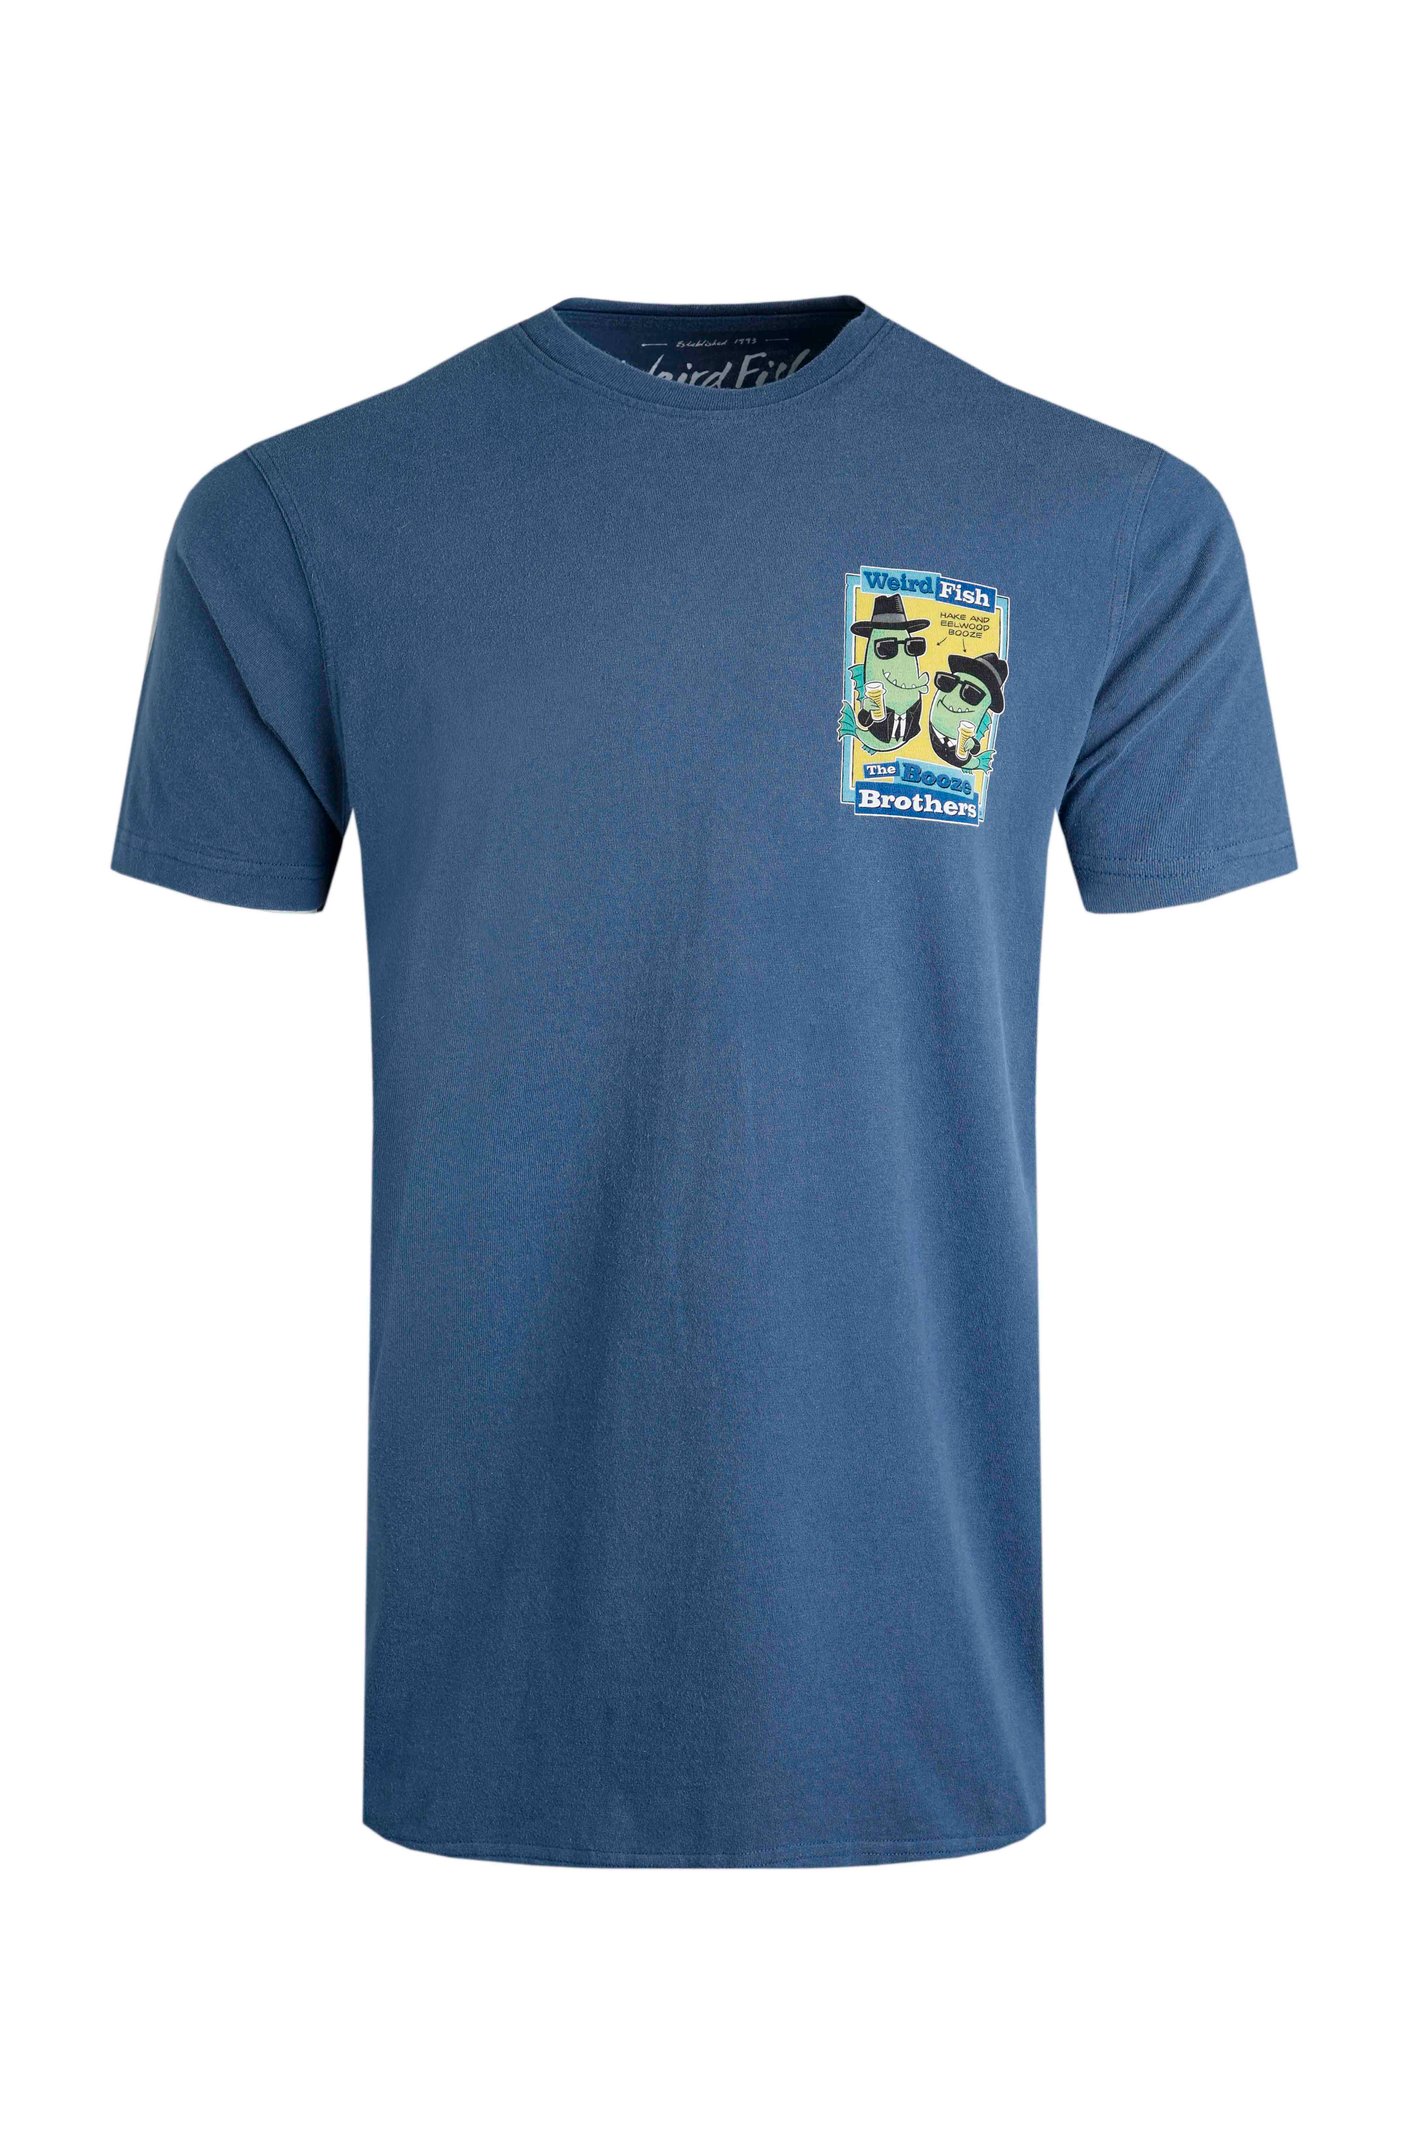 Weird Fish Booze Brothers Artist T-Shirt Ensign Blue Size XL